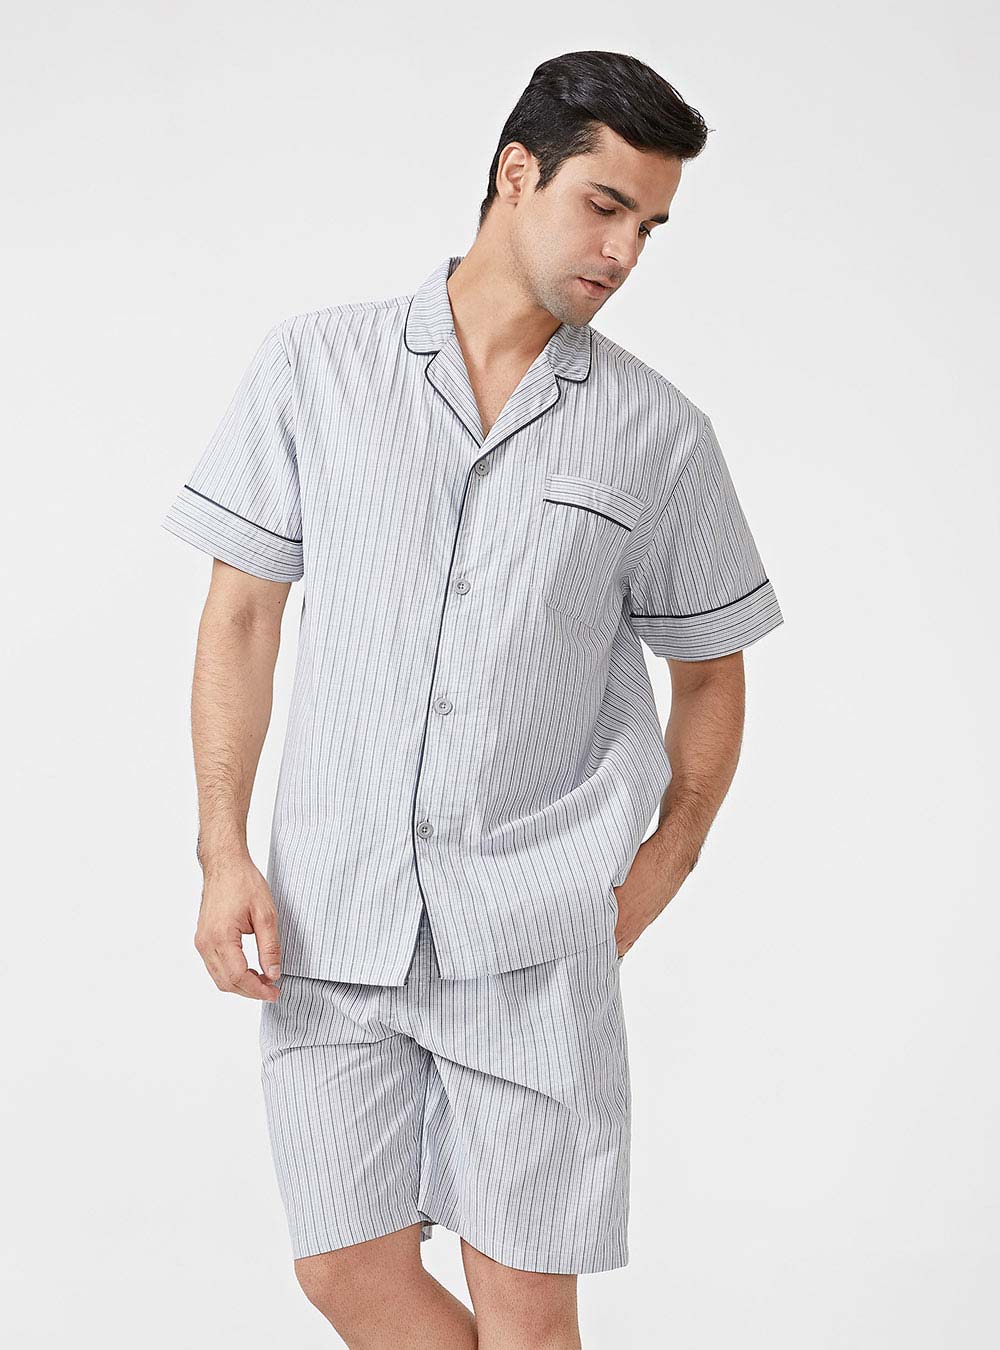 Lightweight Short Pajamas Cotton Button-Down David Archy Men Sleepwear